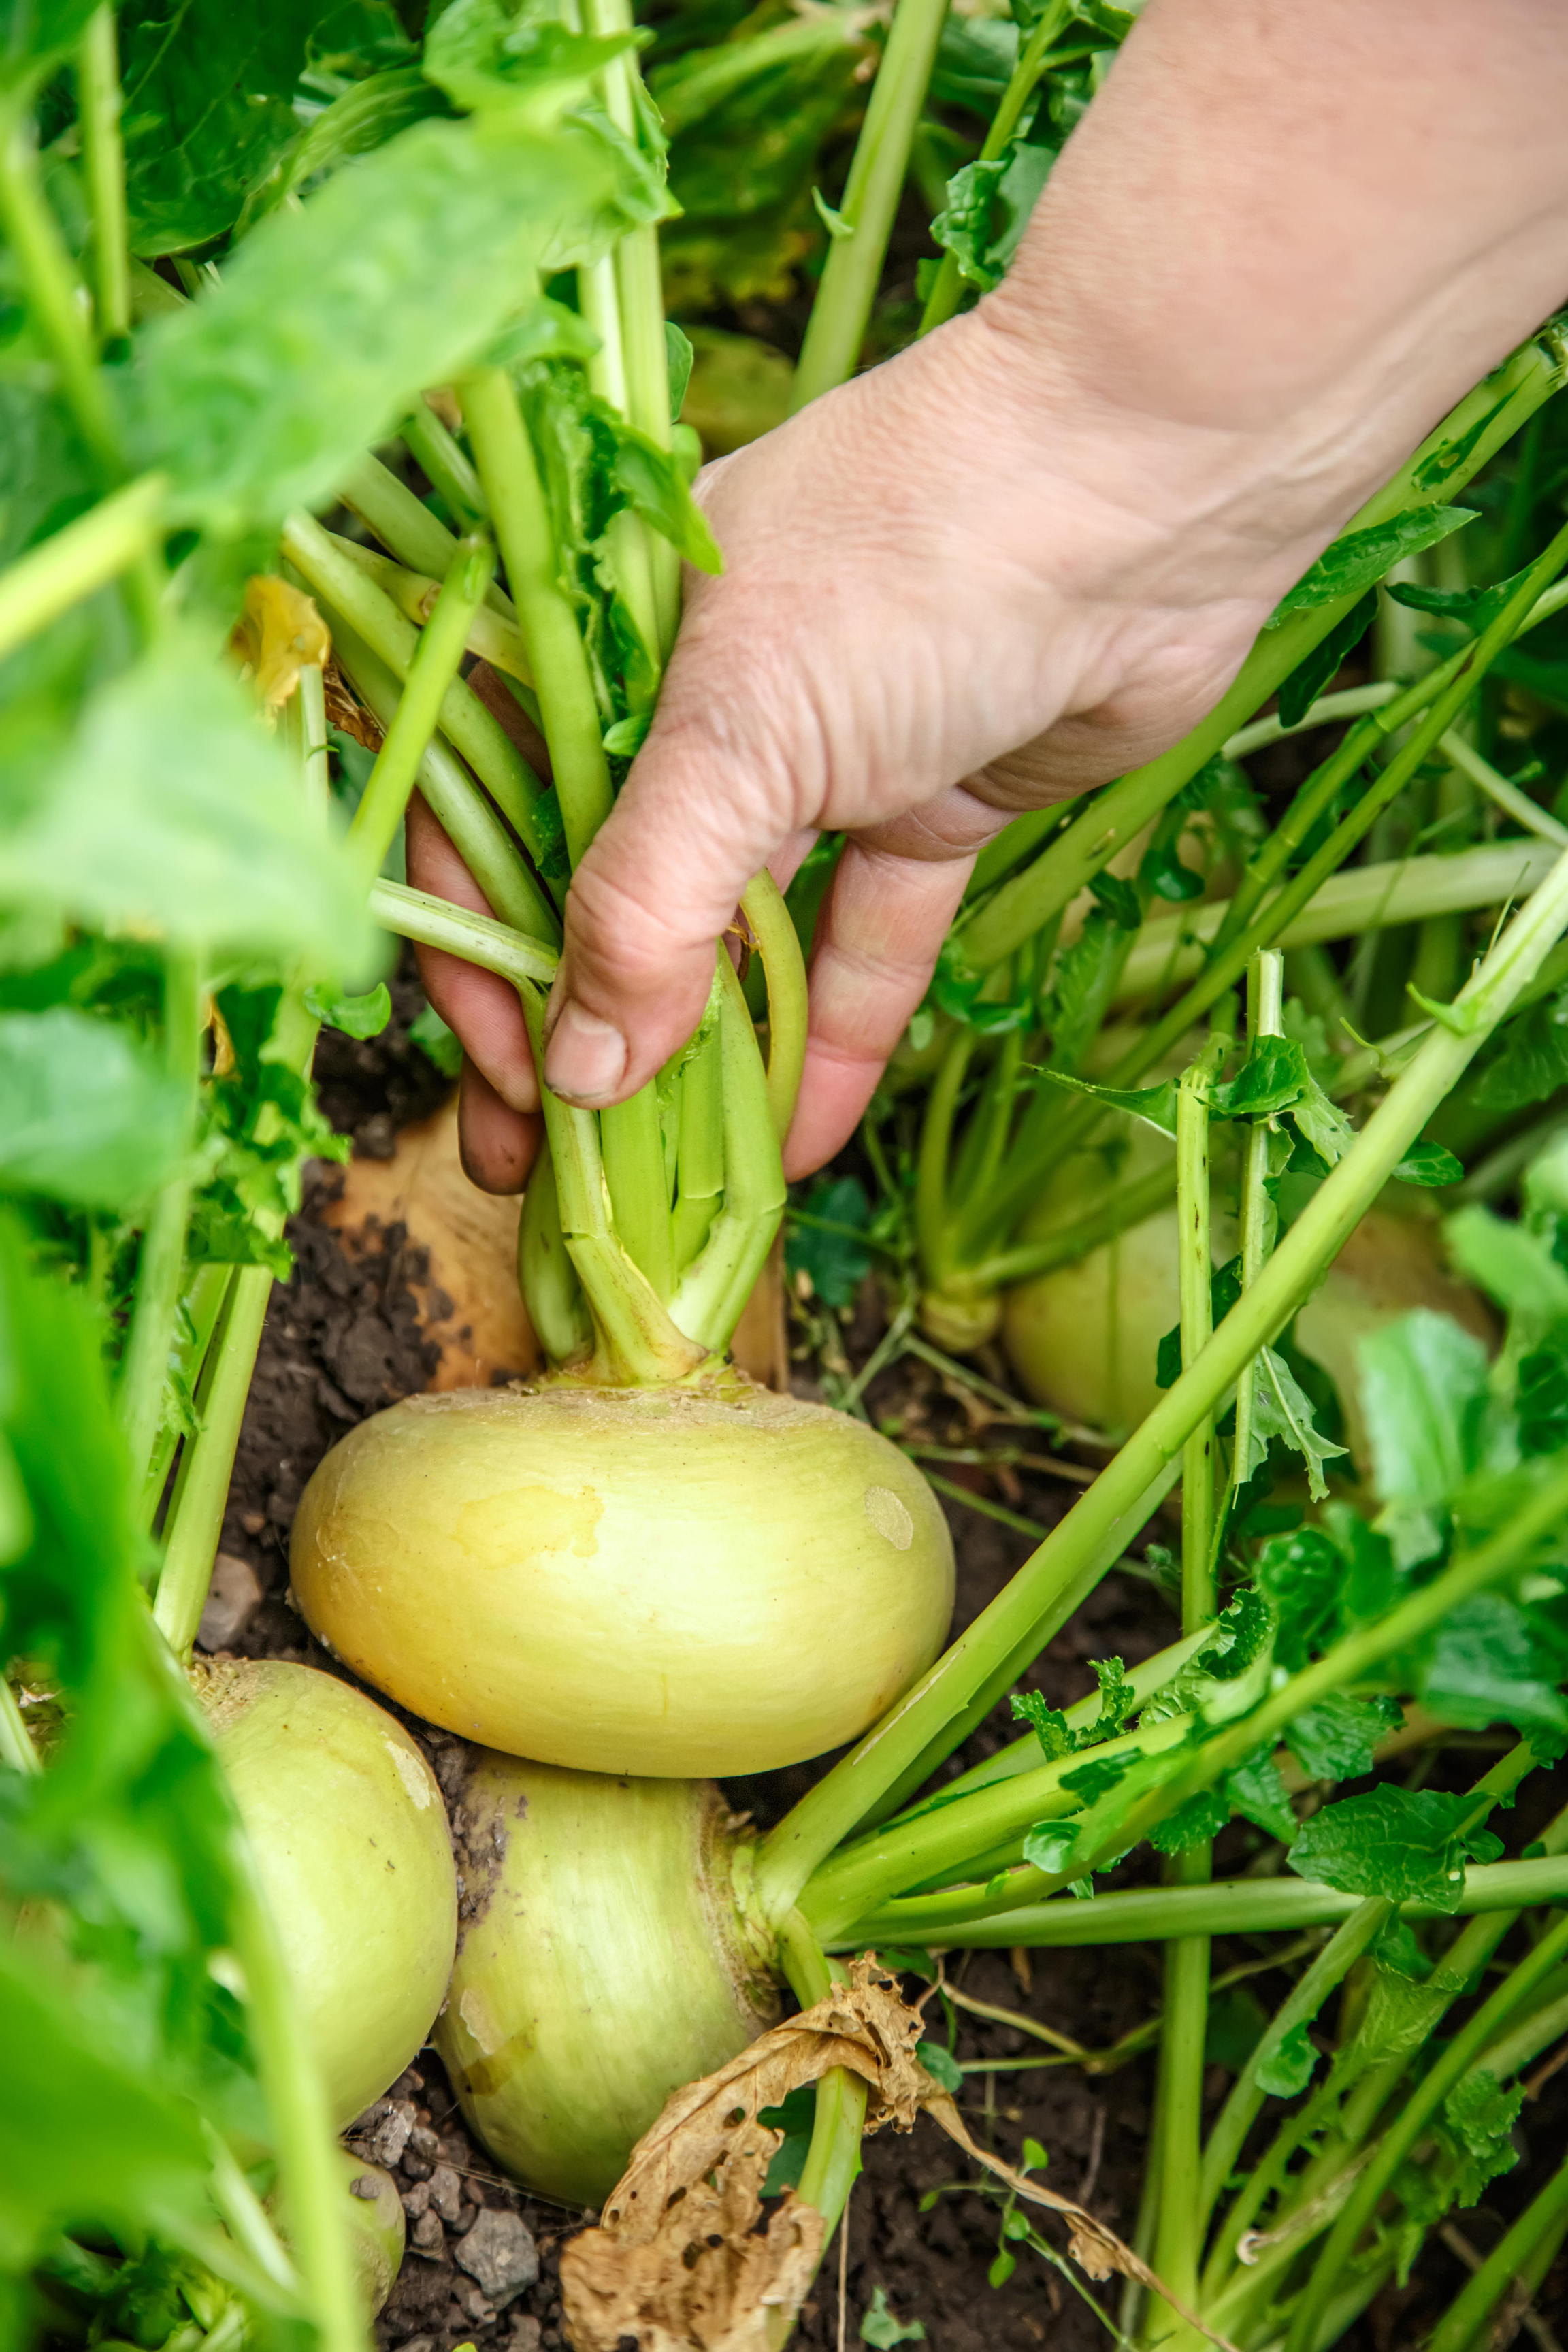 Turnips (Alamy/PA)